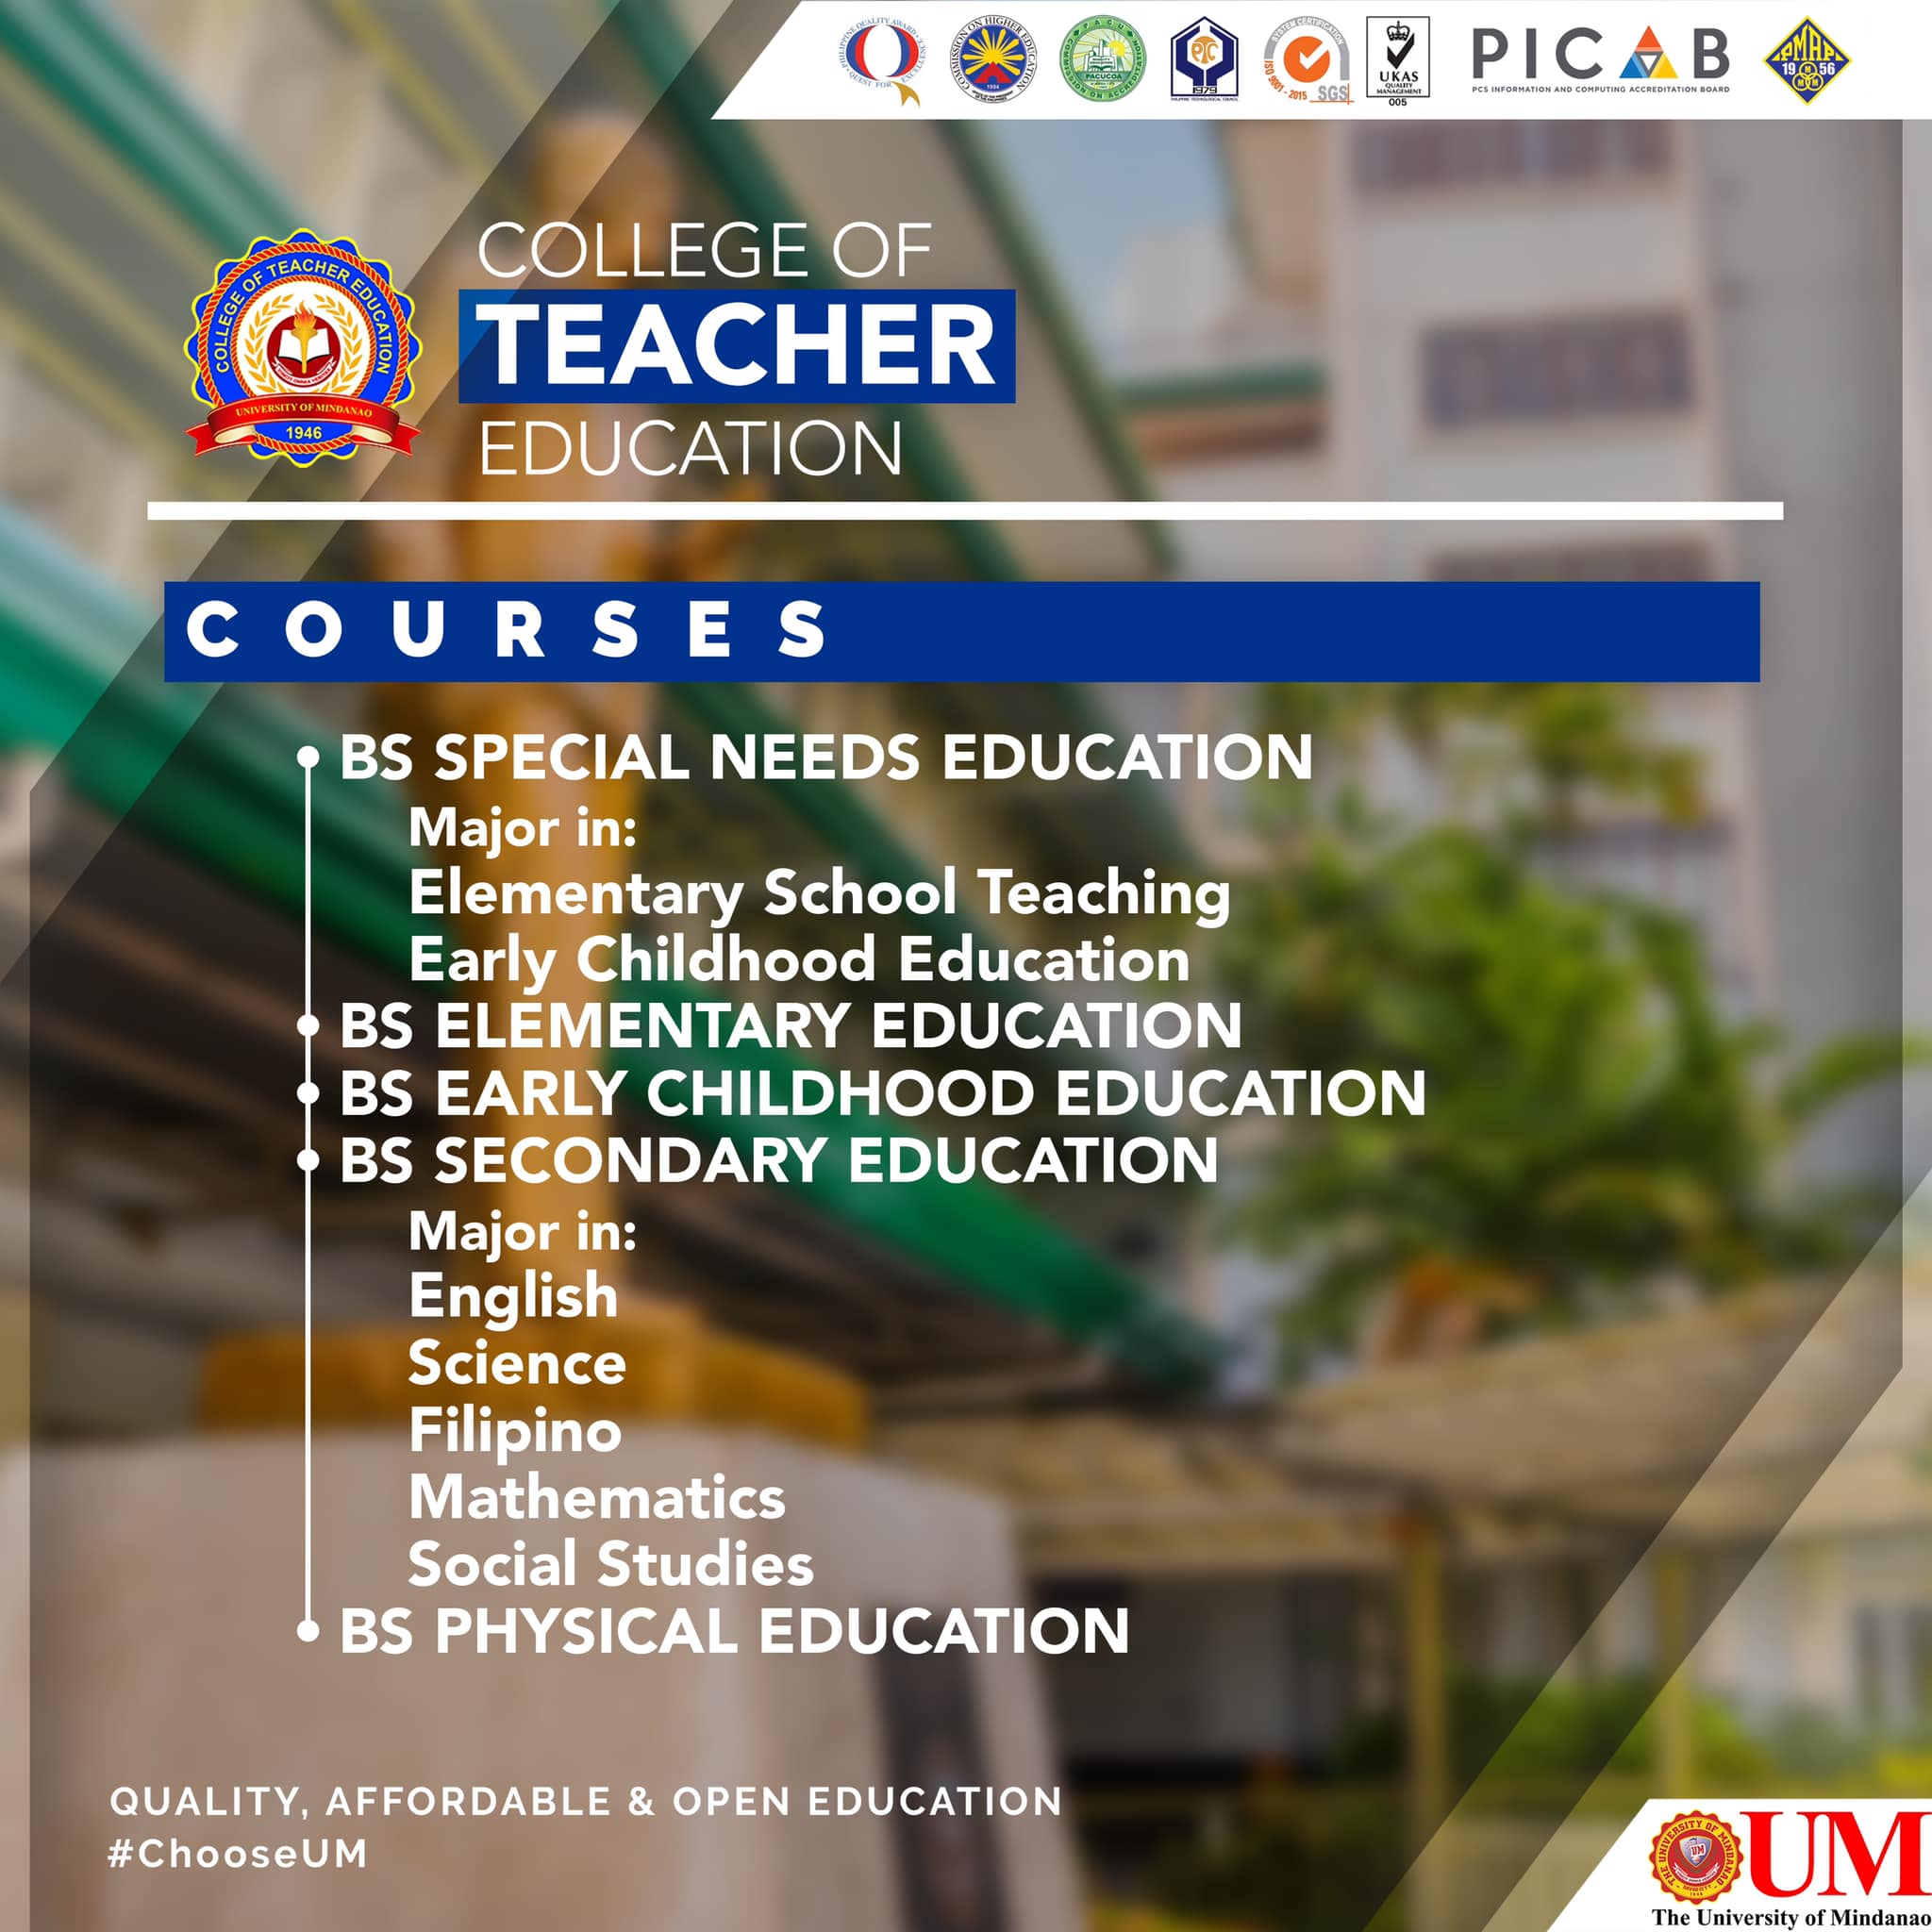 In focus: UM's College of Teacher Education